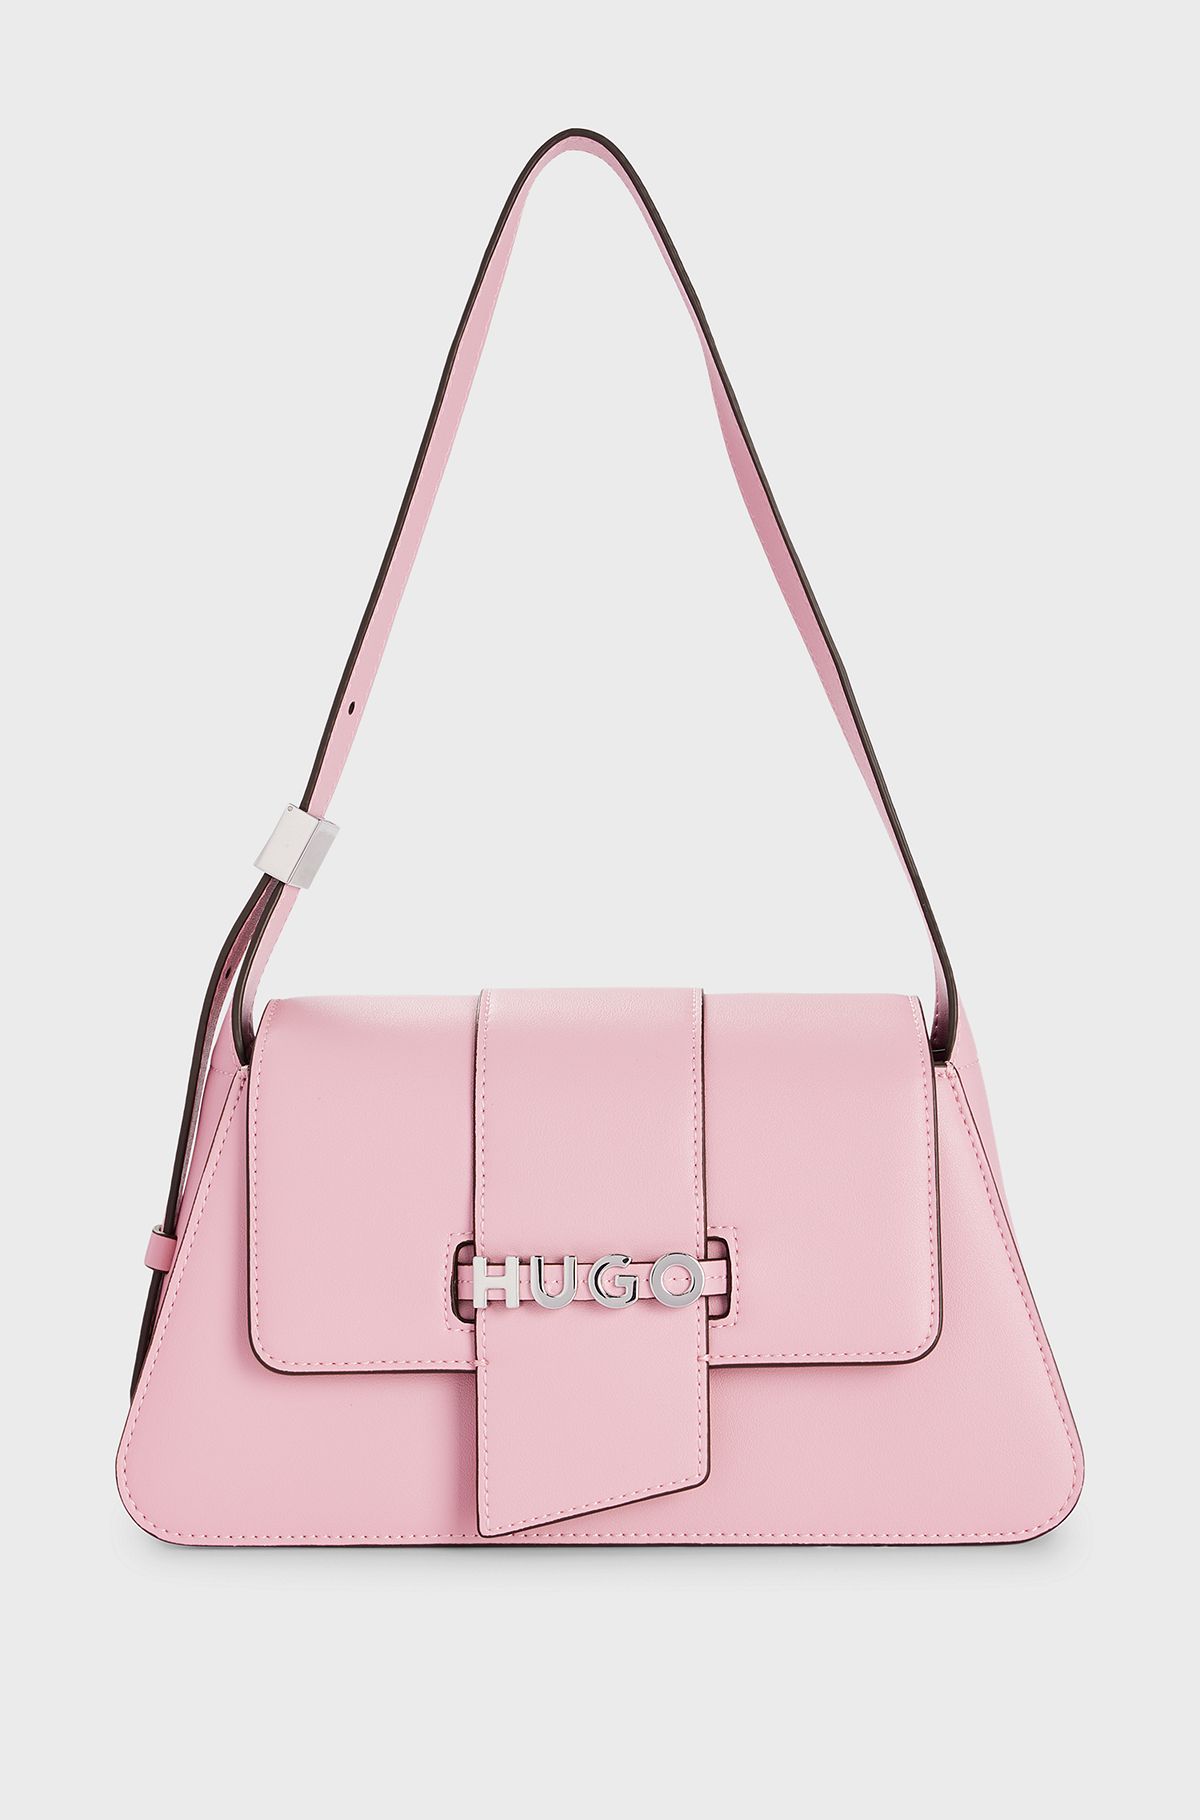 Faux-leather shoulder bag with logo lettering, light pink